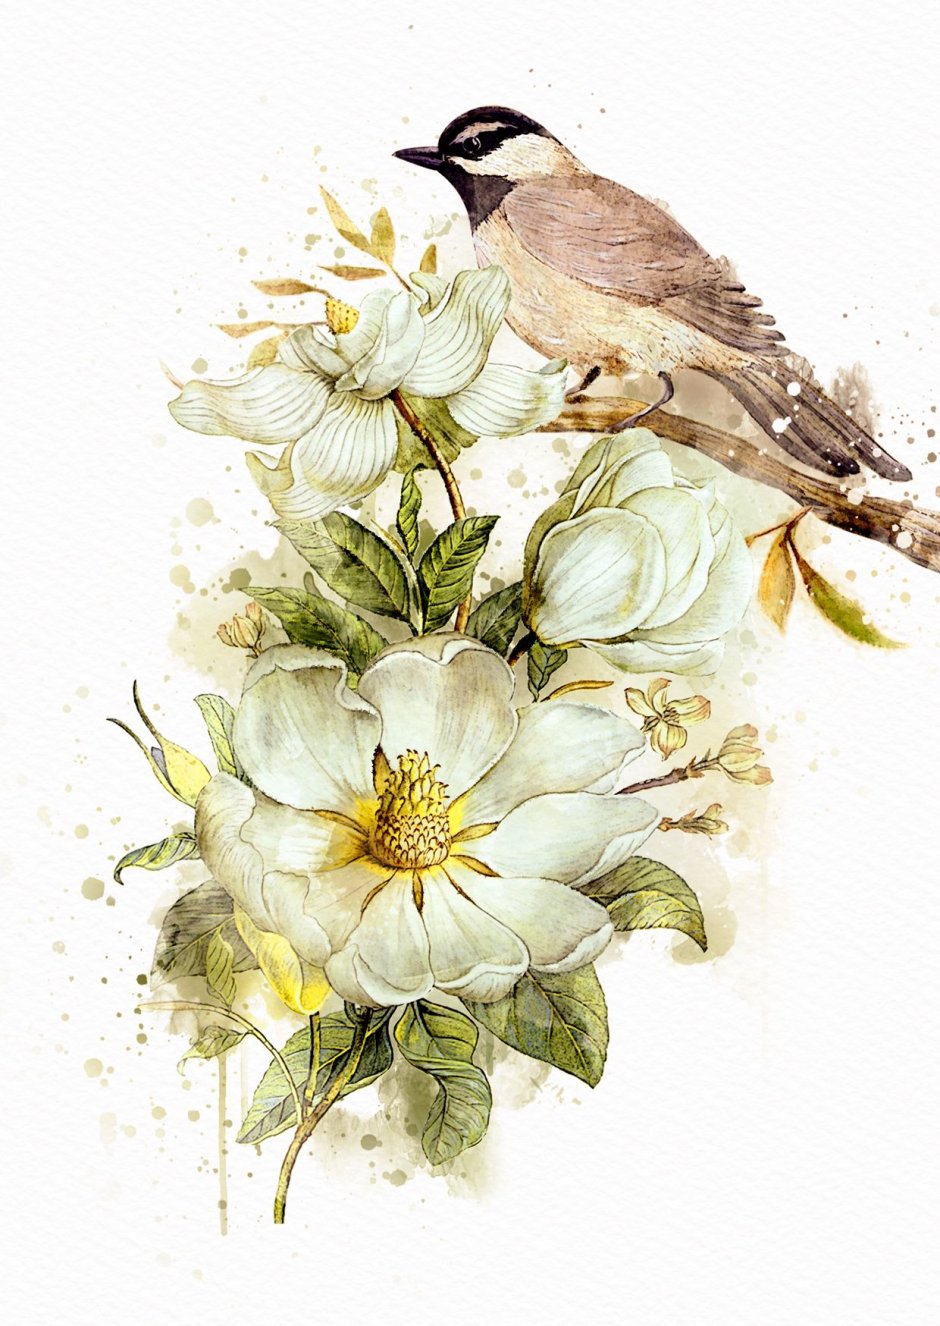 Винтажные открытки с птицами